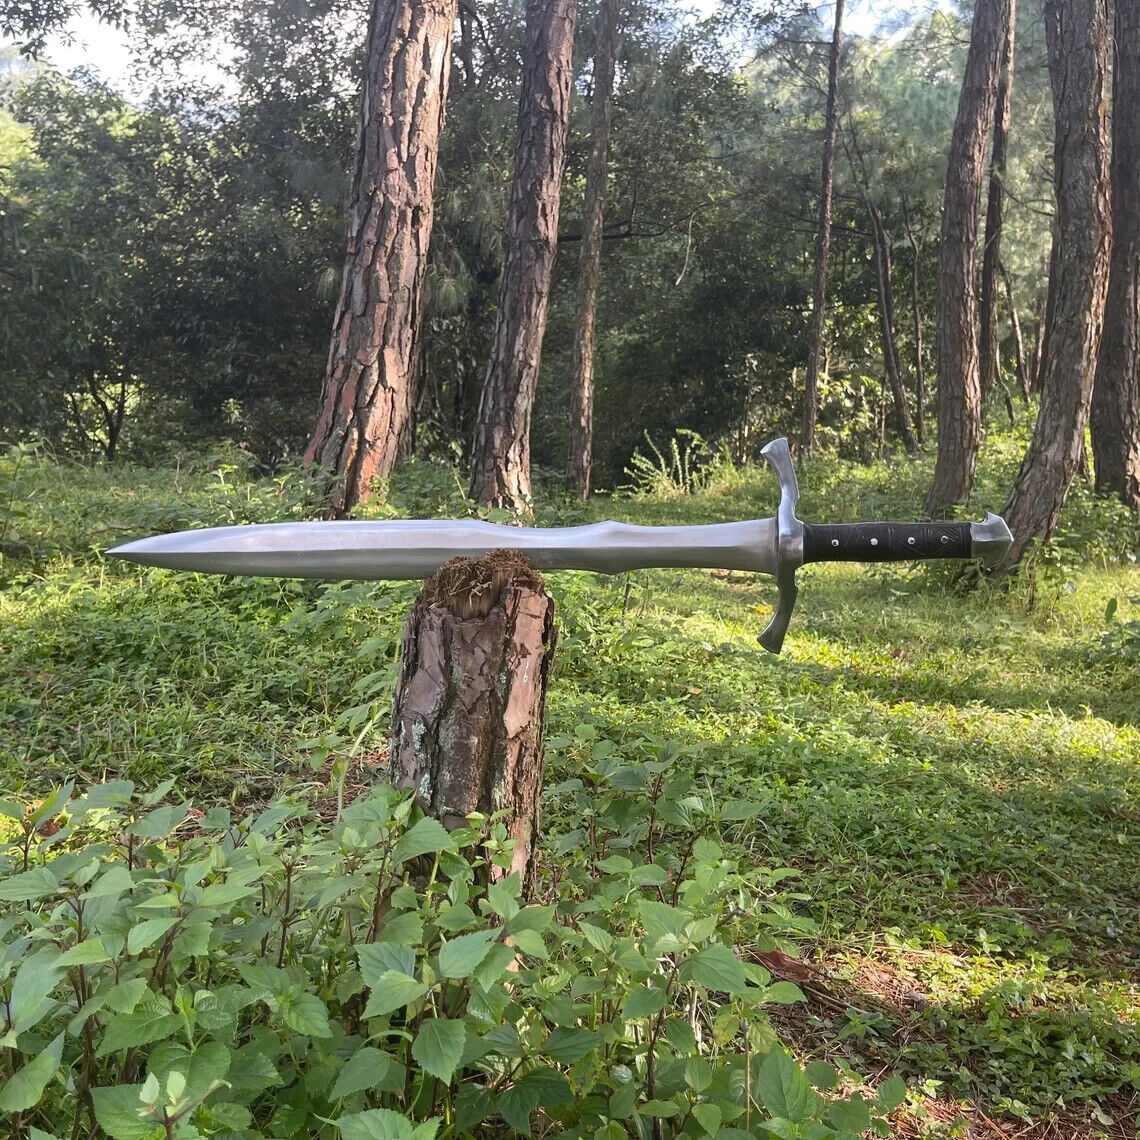 CUSTOM HANDMADE D2 TOOL STEEL VIKING SWORD COMBAT SWORD WARRIOR SWORD